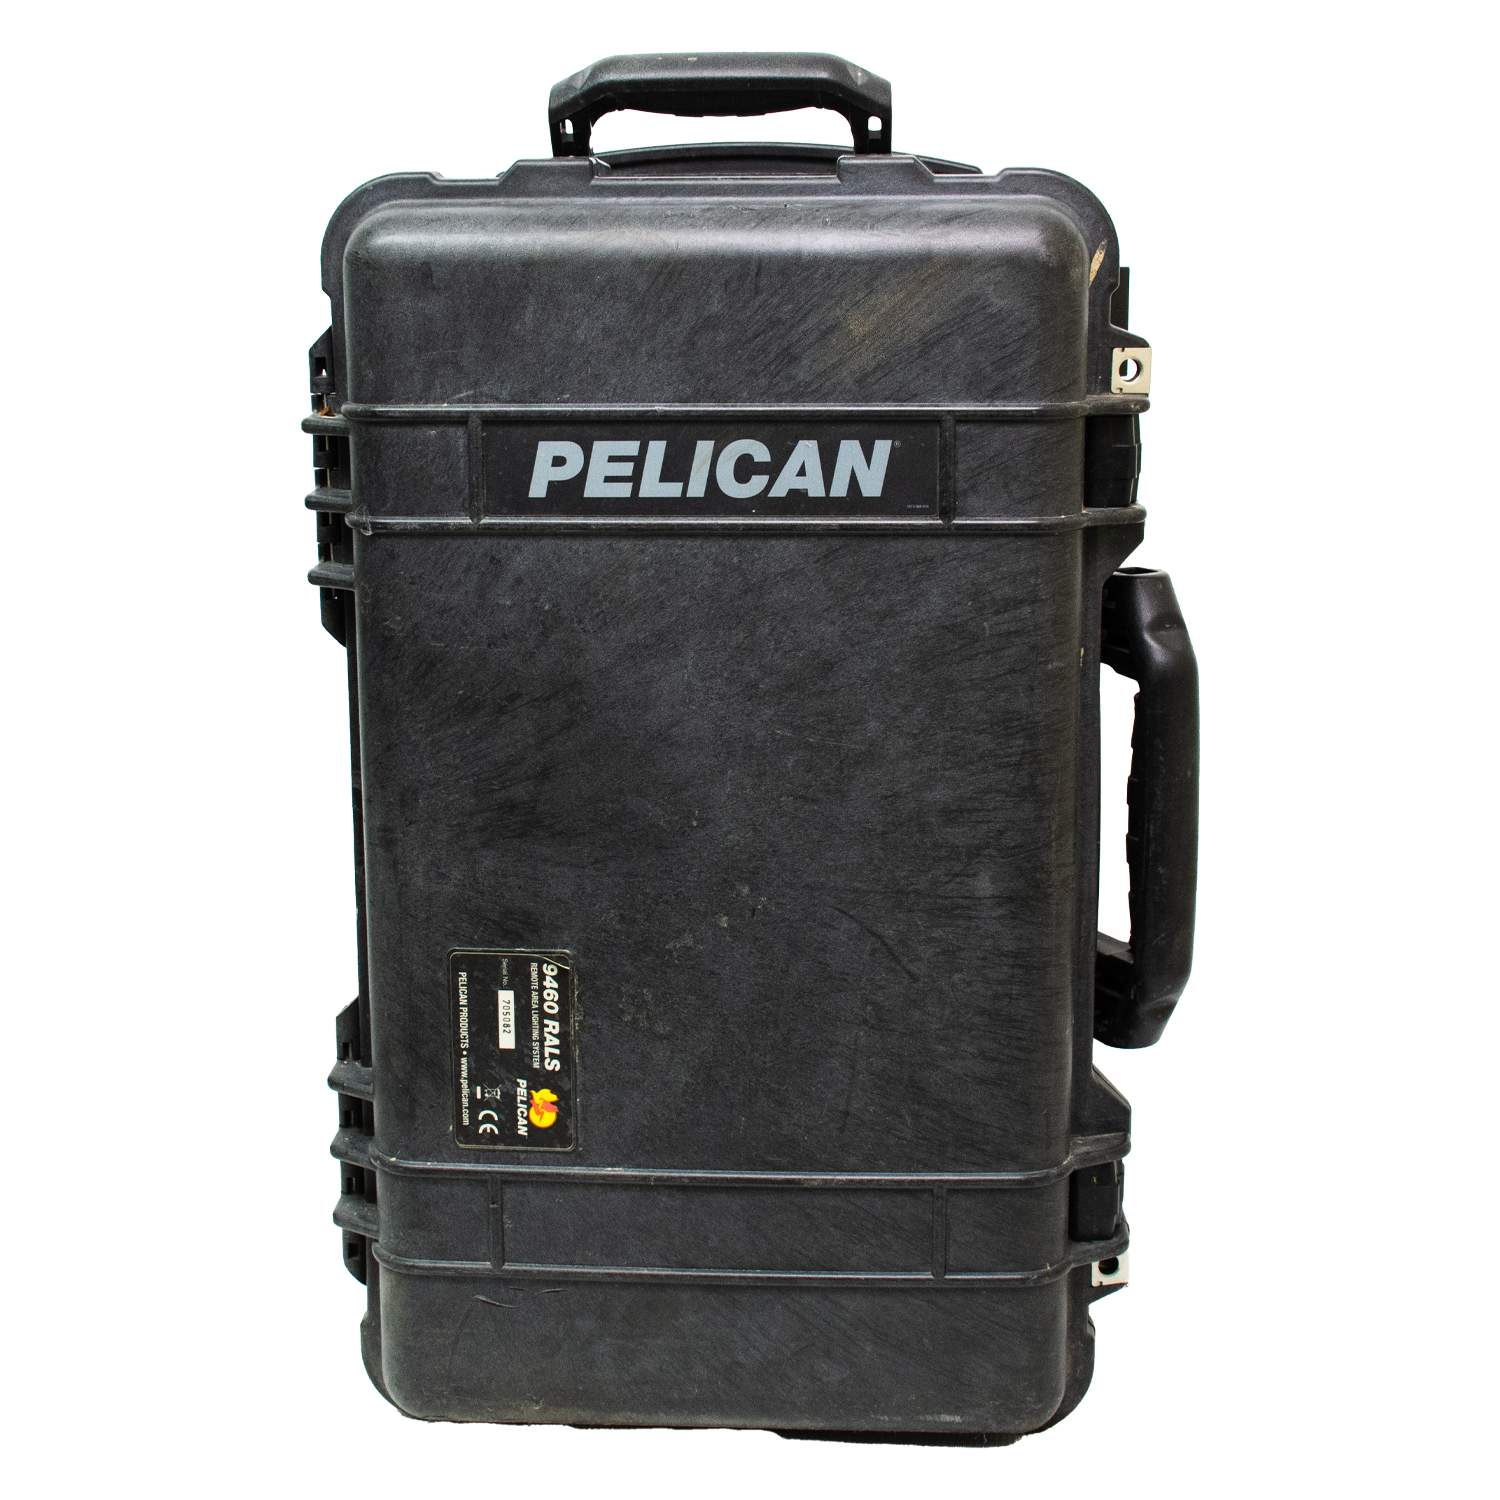 Pelican 9460 Rals Light in Case